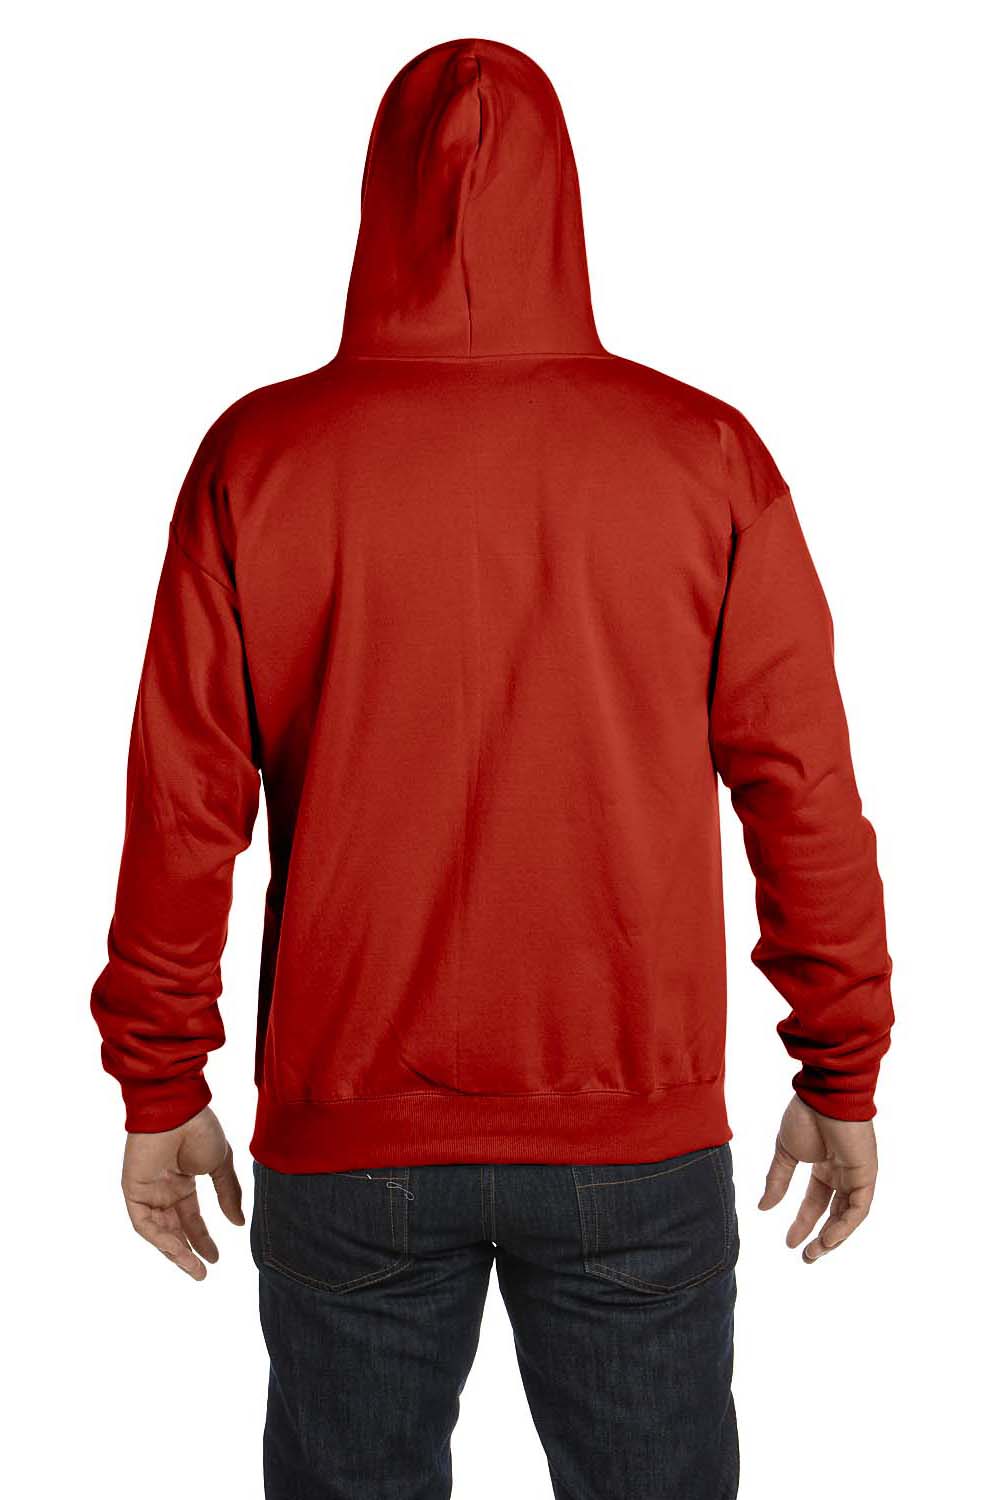 Hanes P180 Mens EcoSmart Print Pro XP Full Zip Hooded Sweatshirt Hoodie Red Back